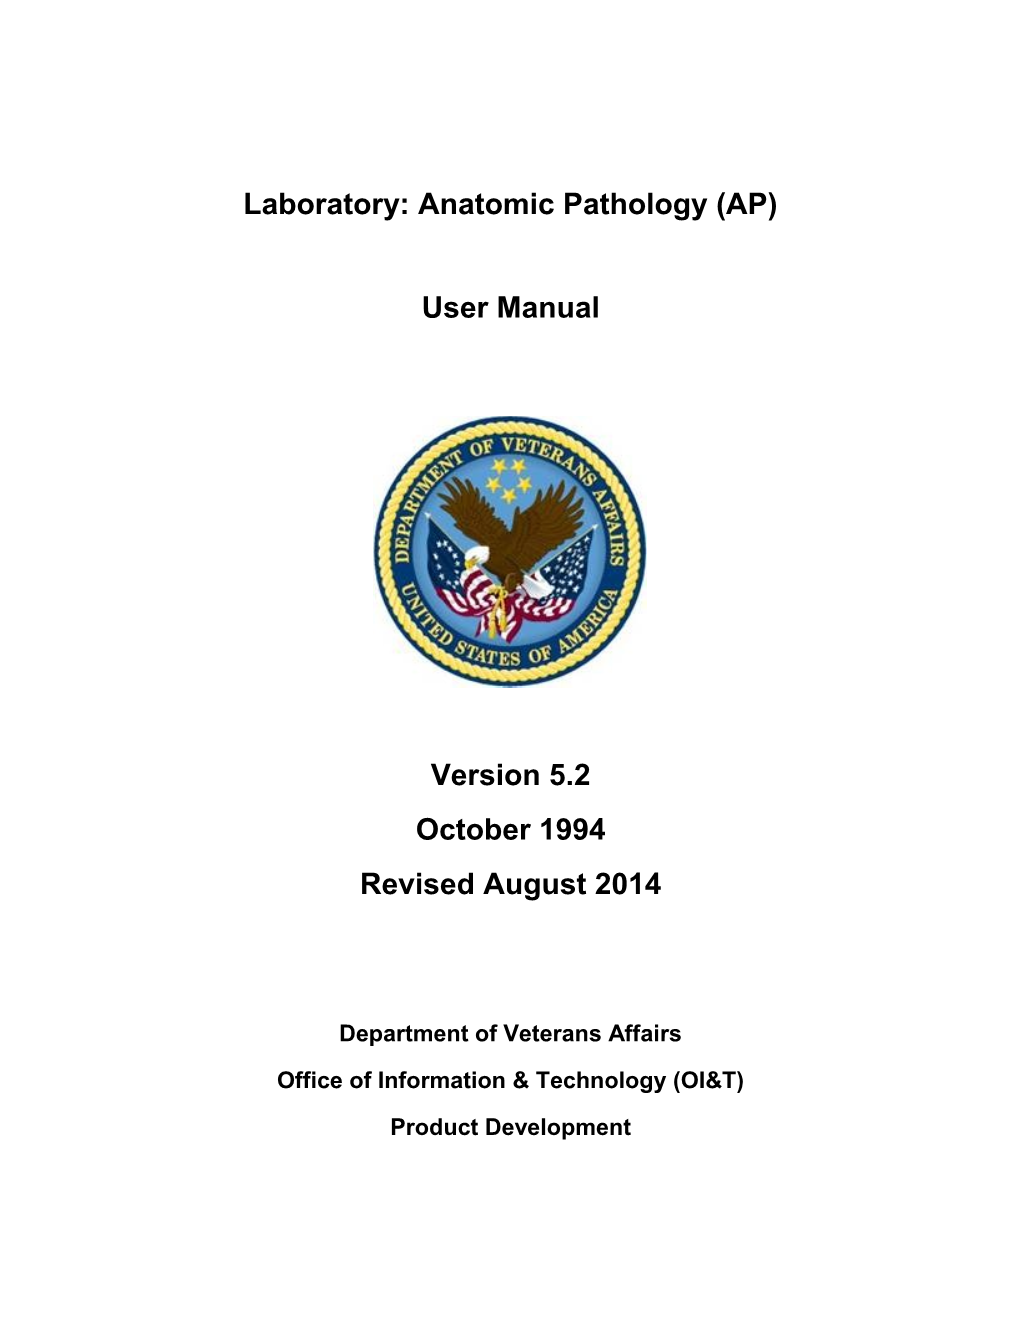 Lab: Anatomic Pathology User Manual